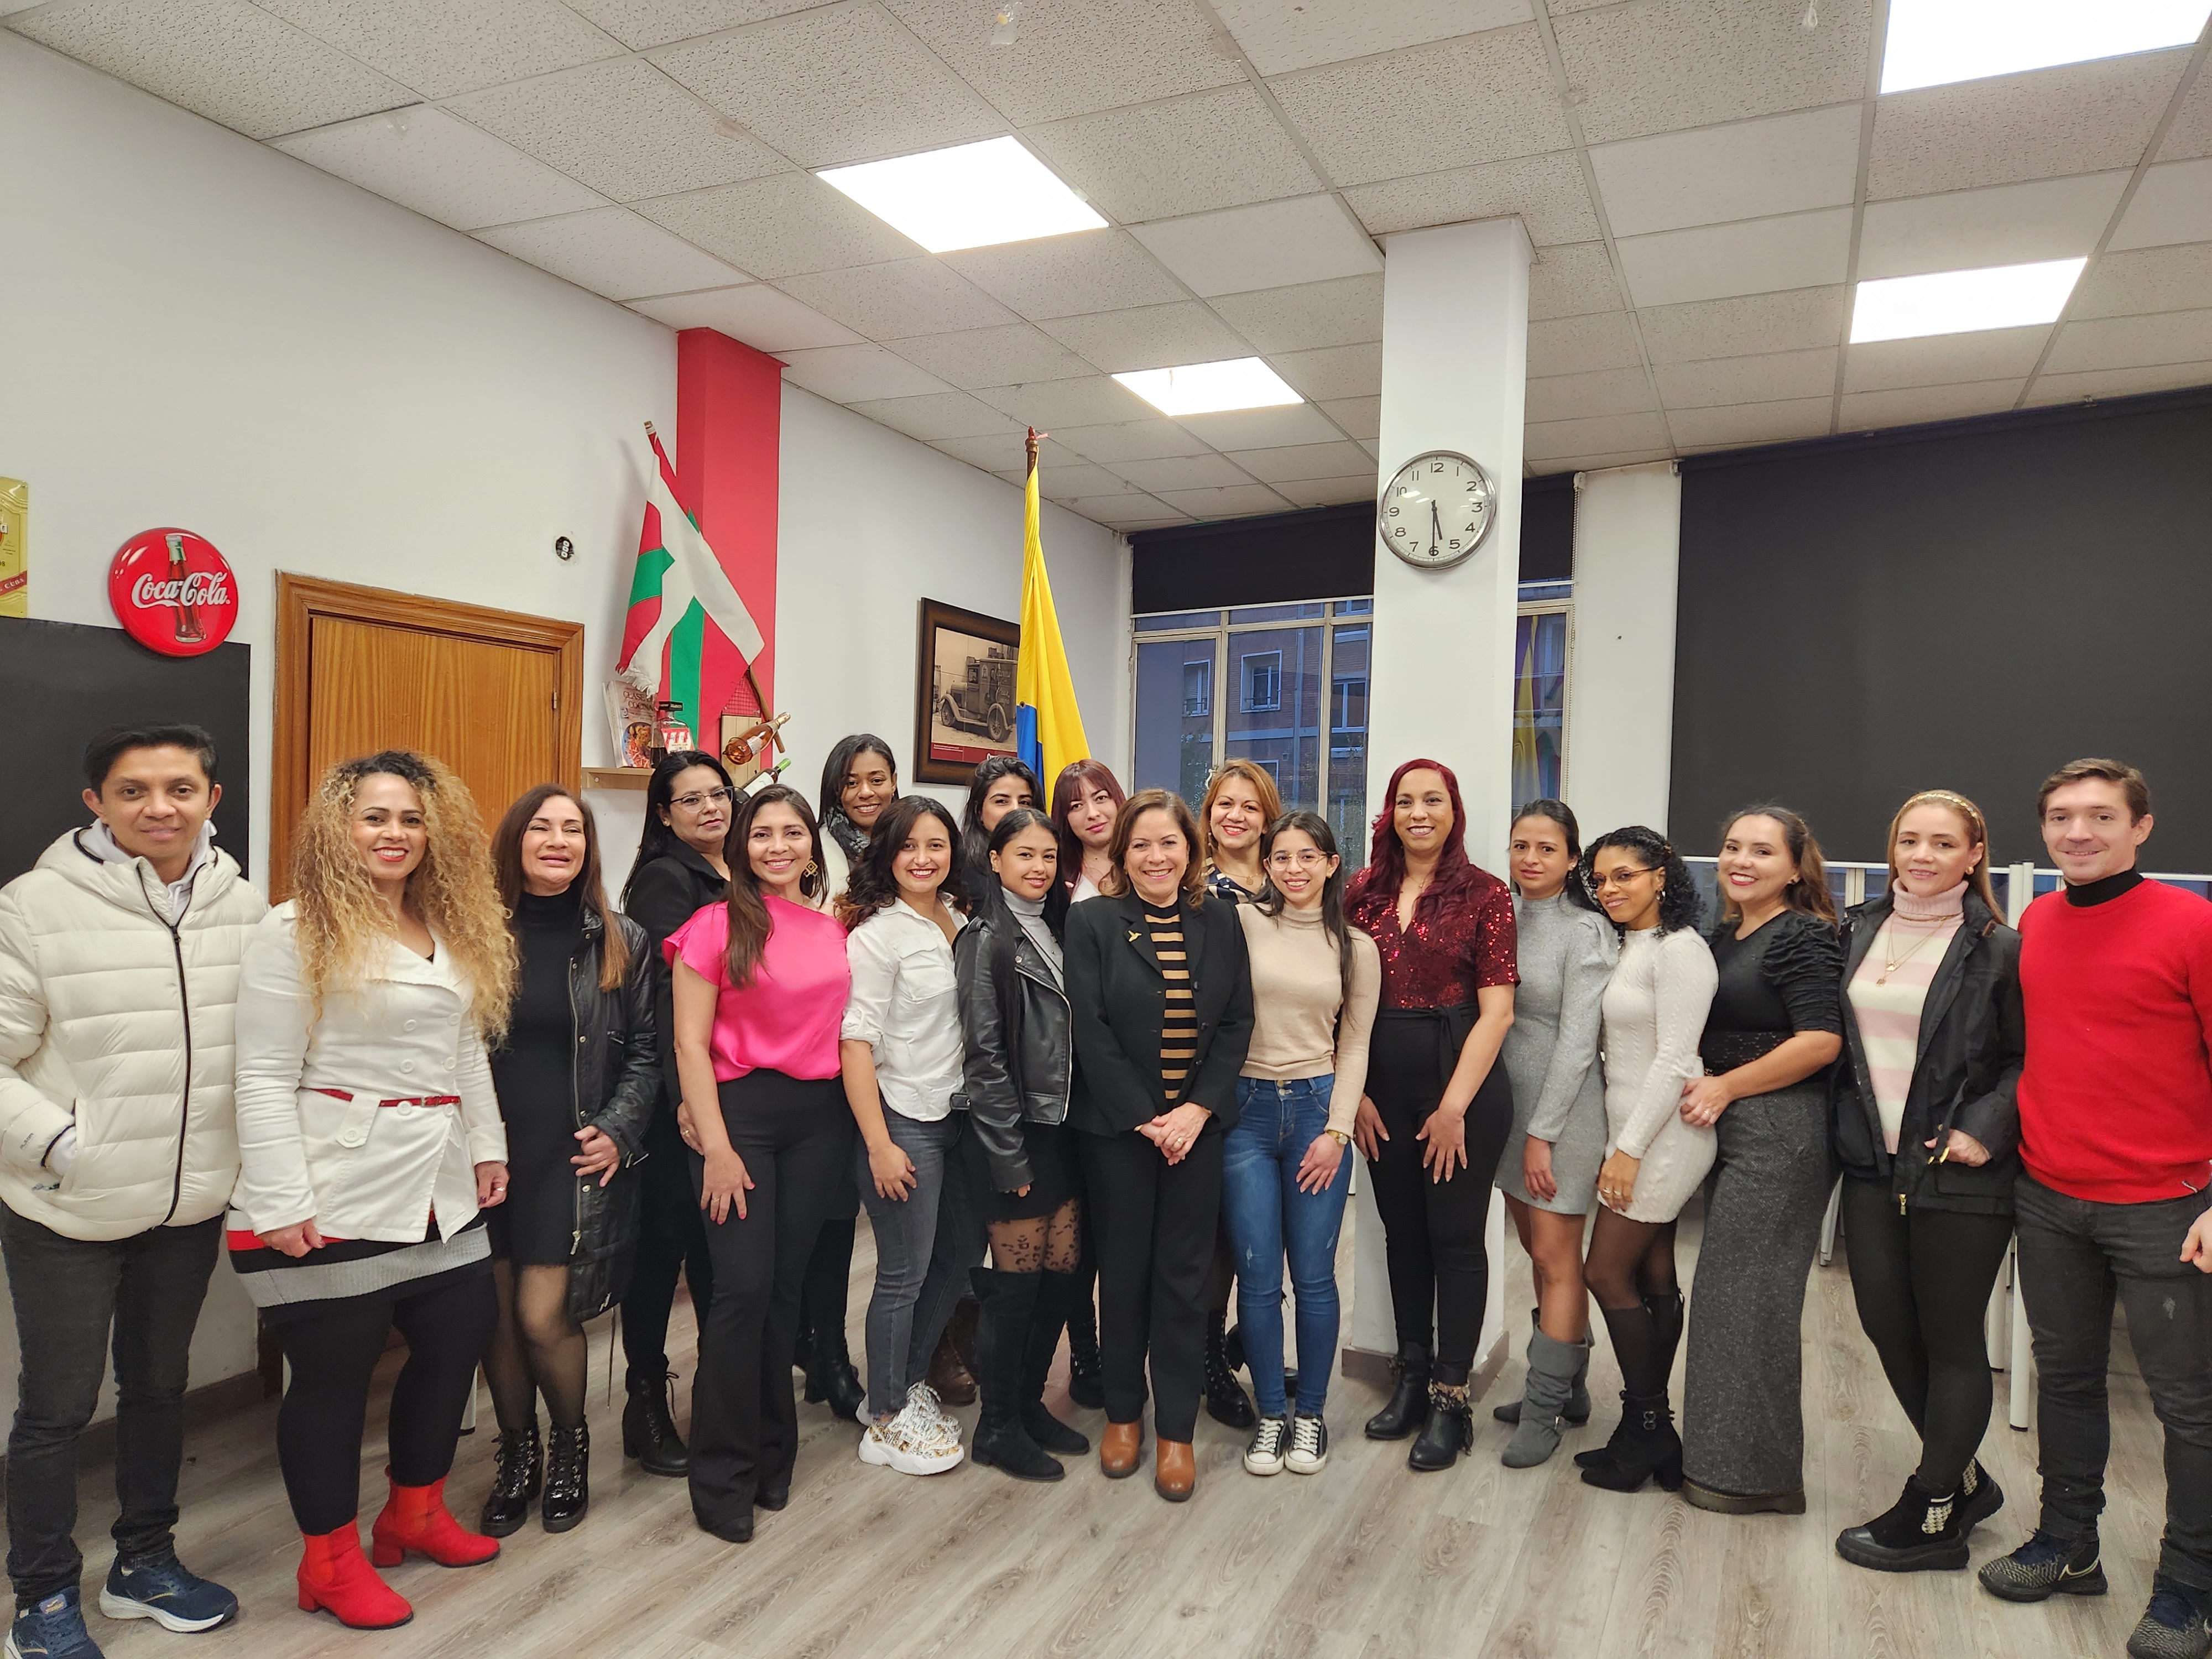 Consulado de Colombia en Bilbao hizo entrega de los certificados del tercer curso de formación para colombianos residentes en Bizcaia